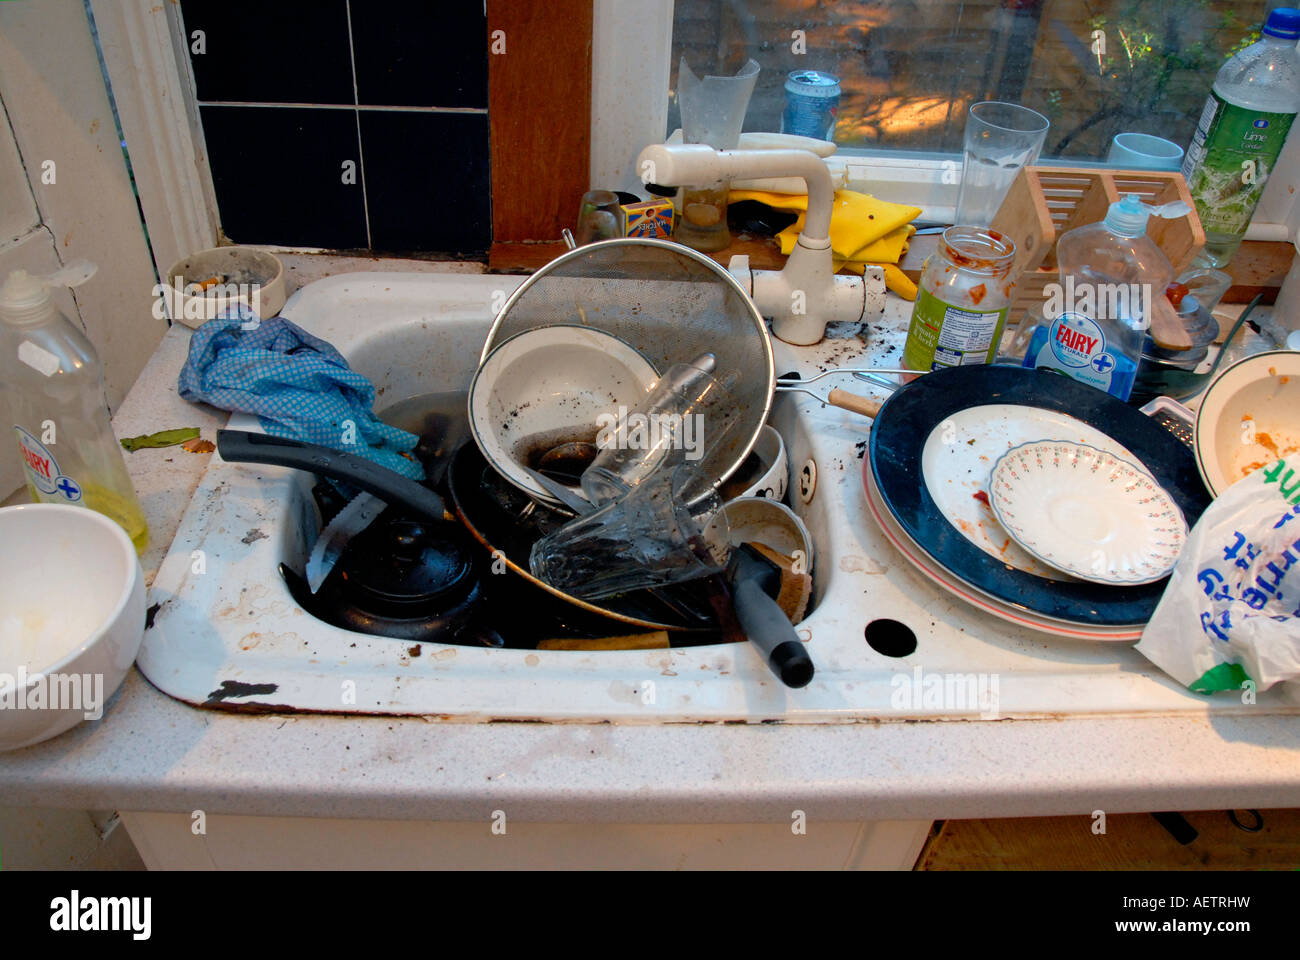 Filthy lavello da cucina con piatti sporchi da lavare-up Foto Stock